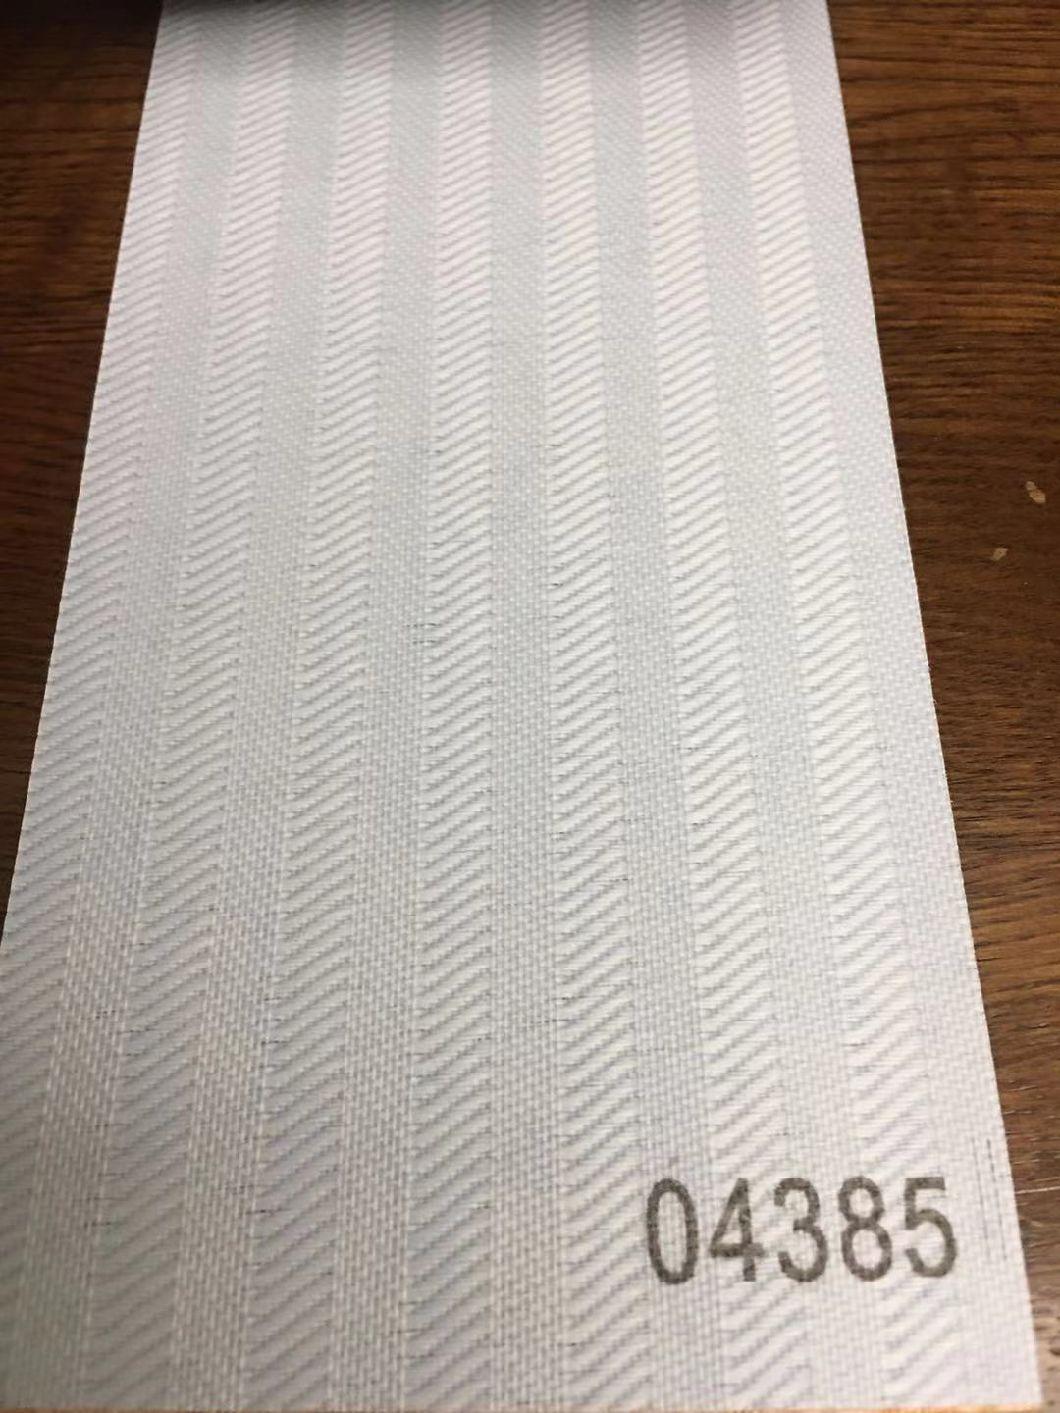 V28 Vertical Blinds Fabric